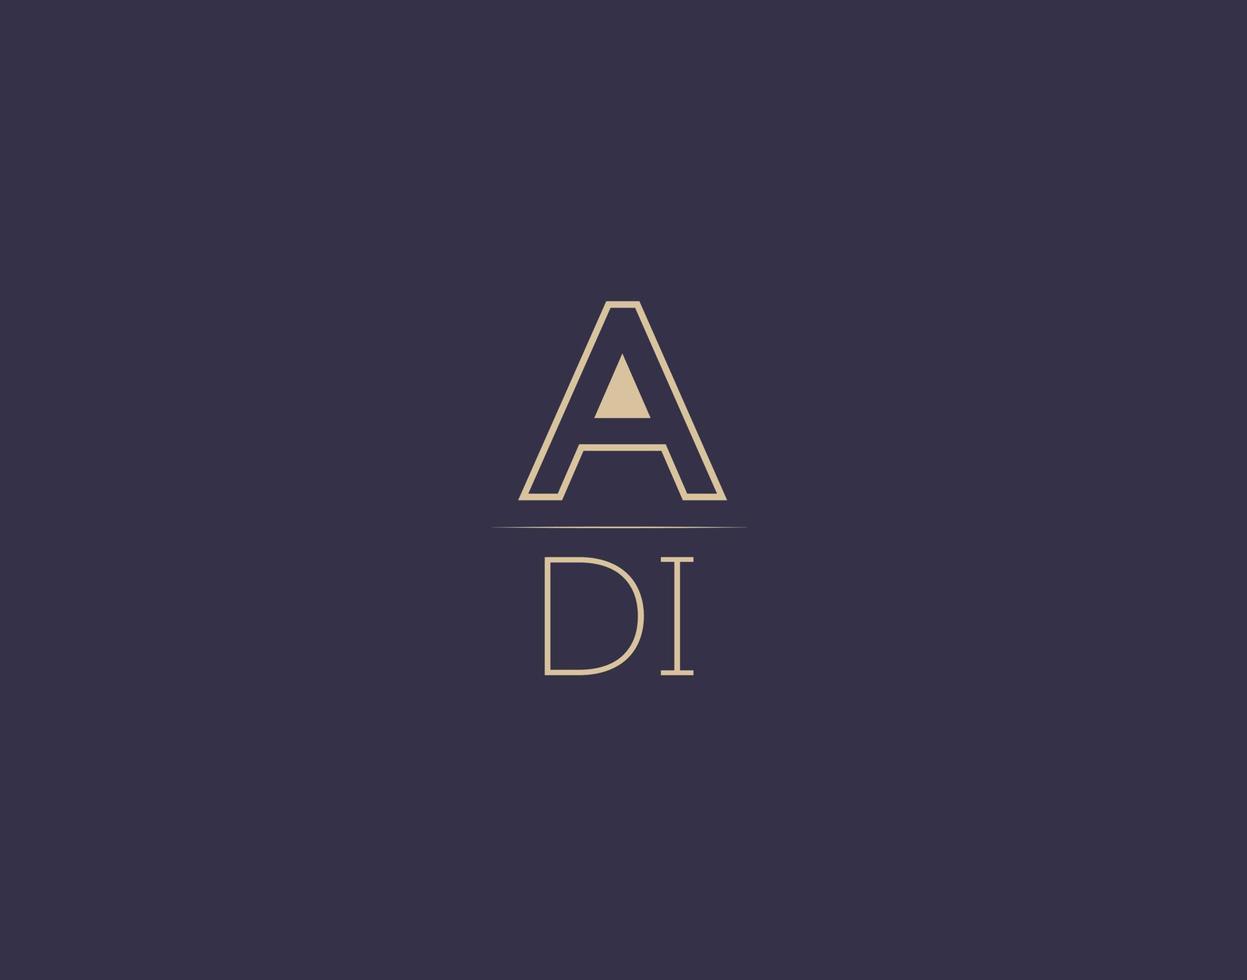 adi brief logo ontwerp modern minimalistische vector afbeeldingen